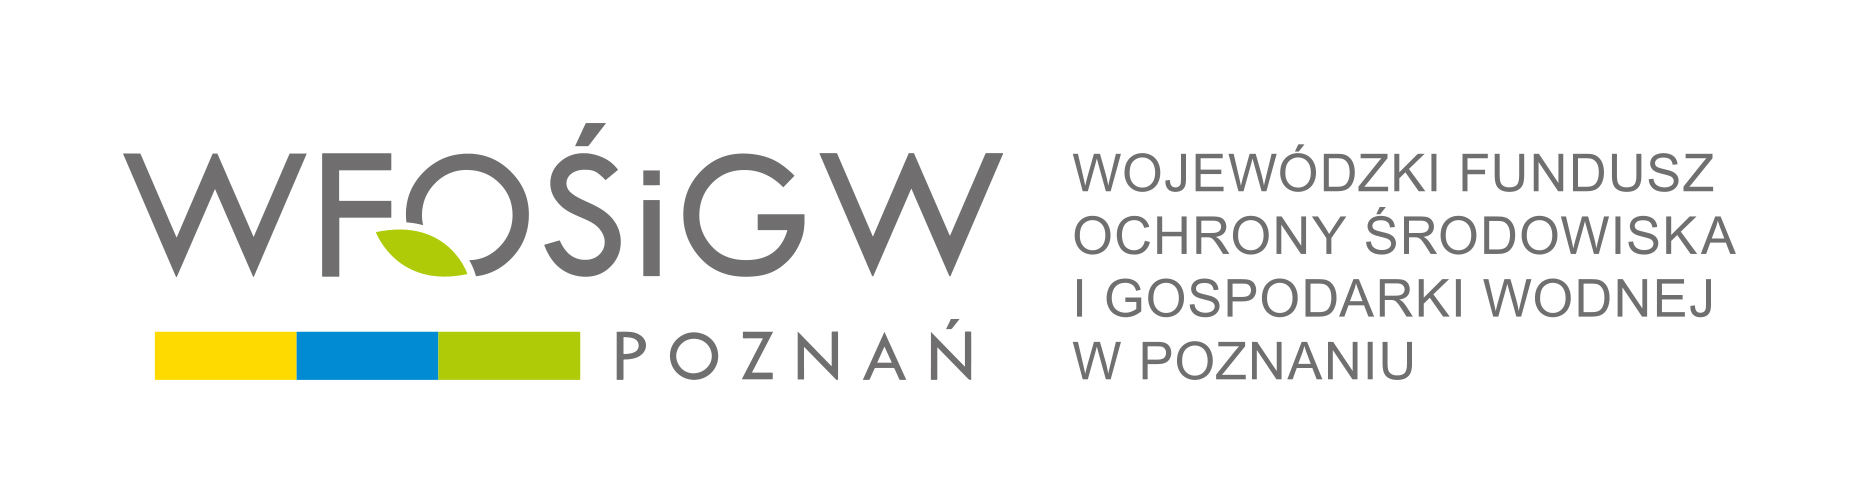 logo wfosigw w Poznaniu